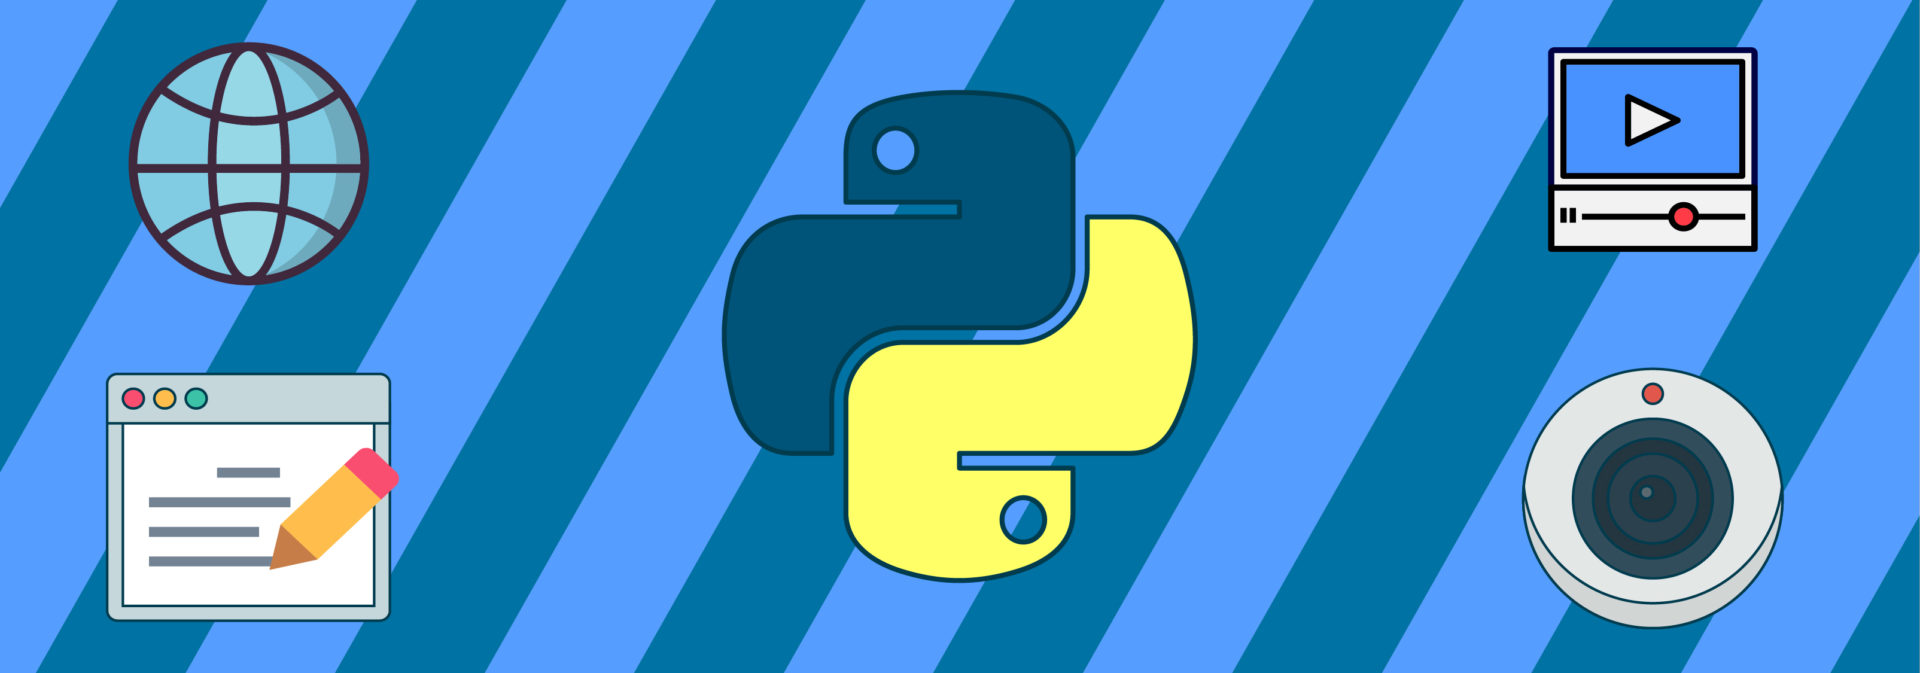 Реальные примеры приложений на Python и PyQT: от косынки до веб-браузера